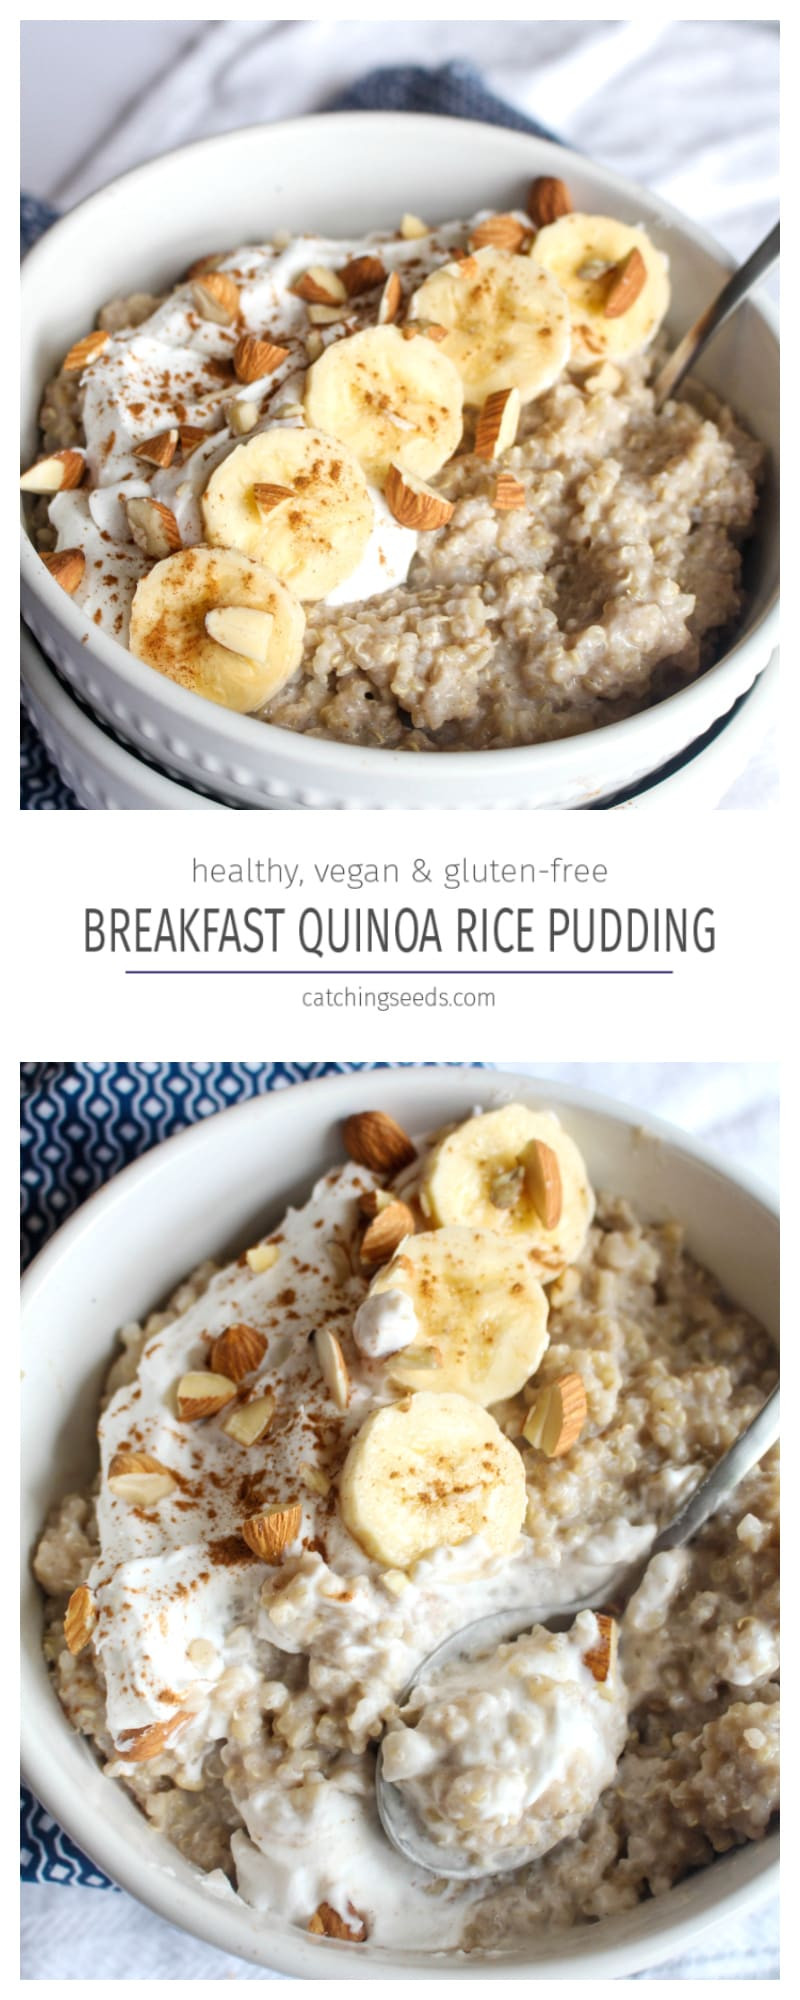 Quinoa Breakfast Recipe
 Breakfast Quinoa Rice Pudding